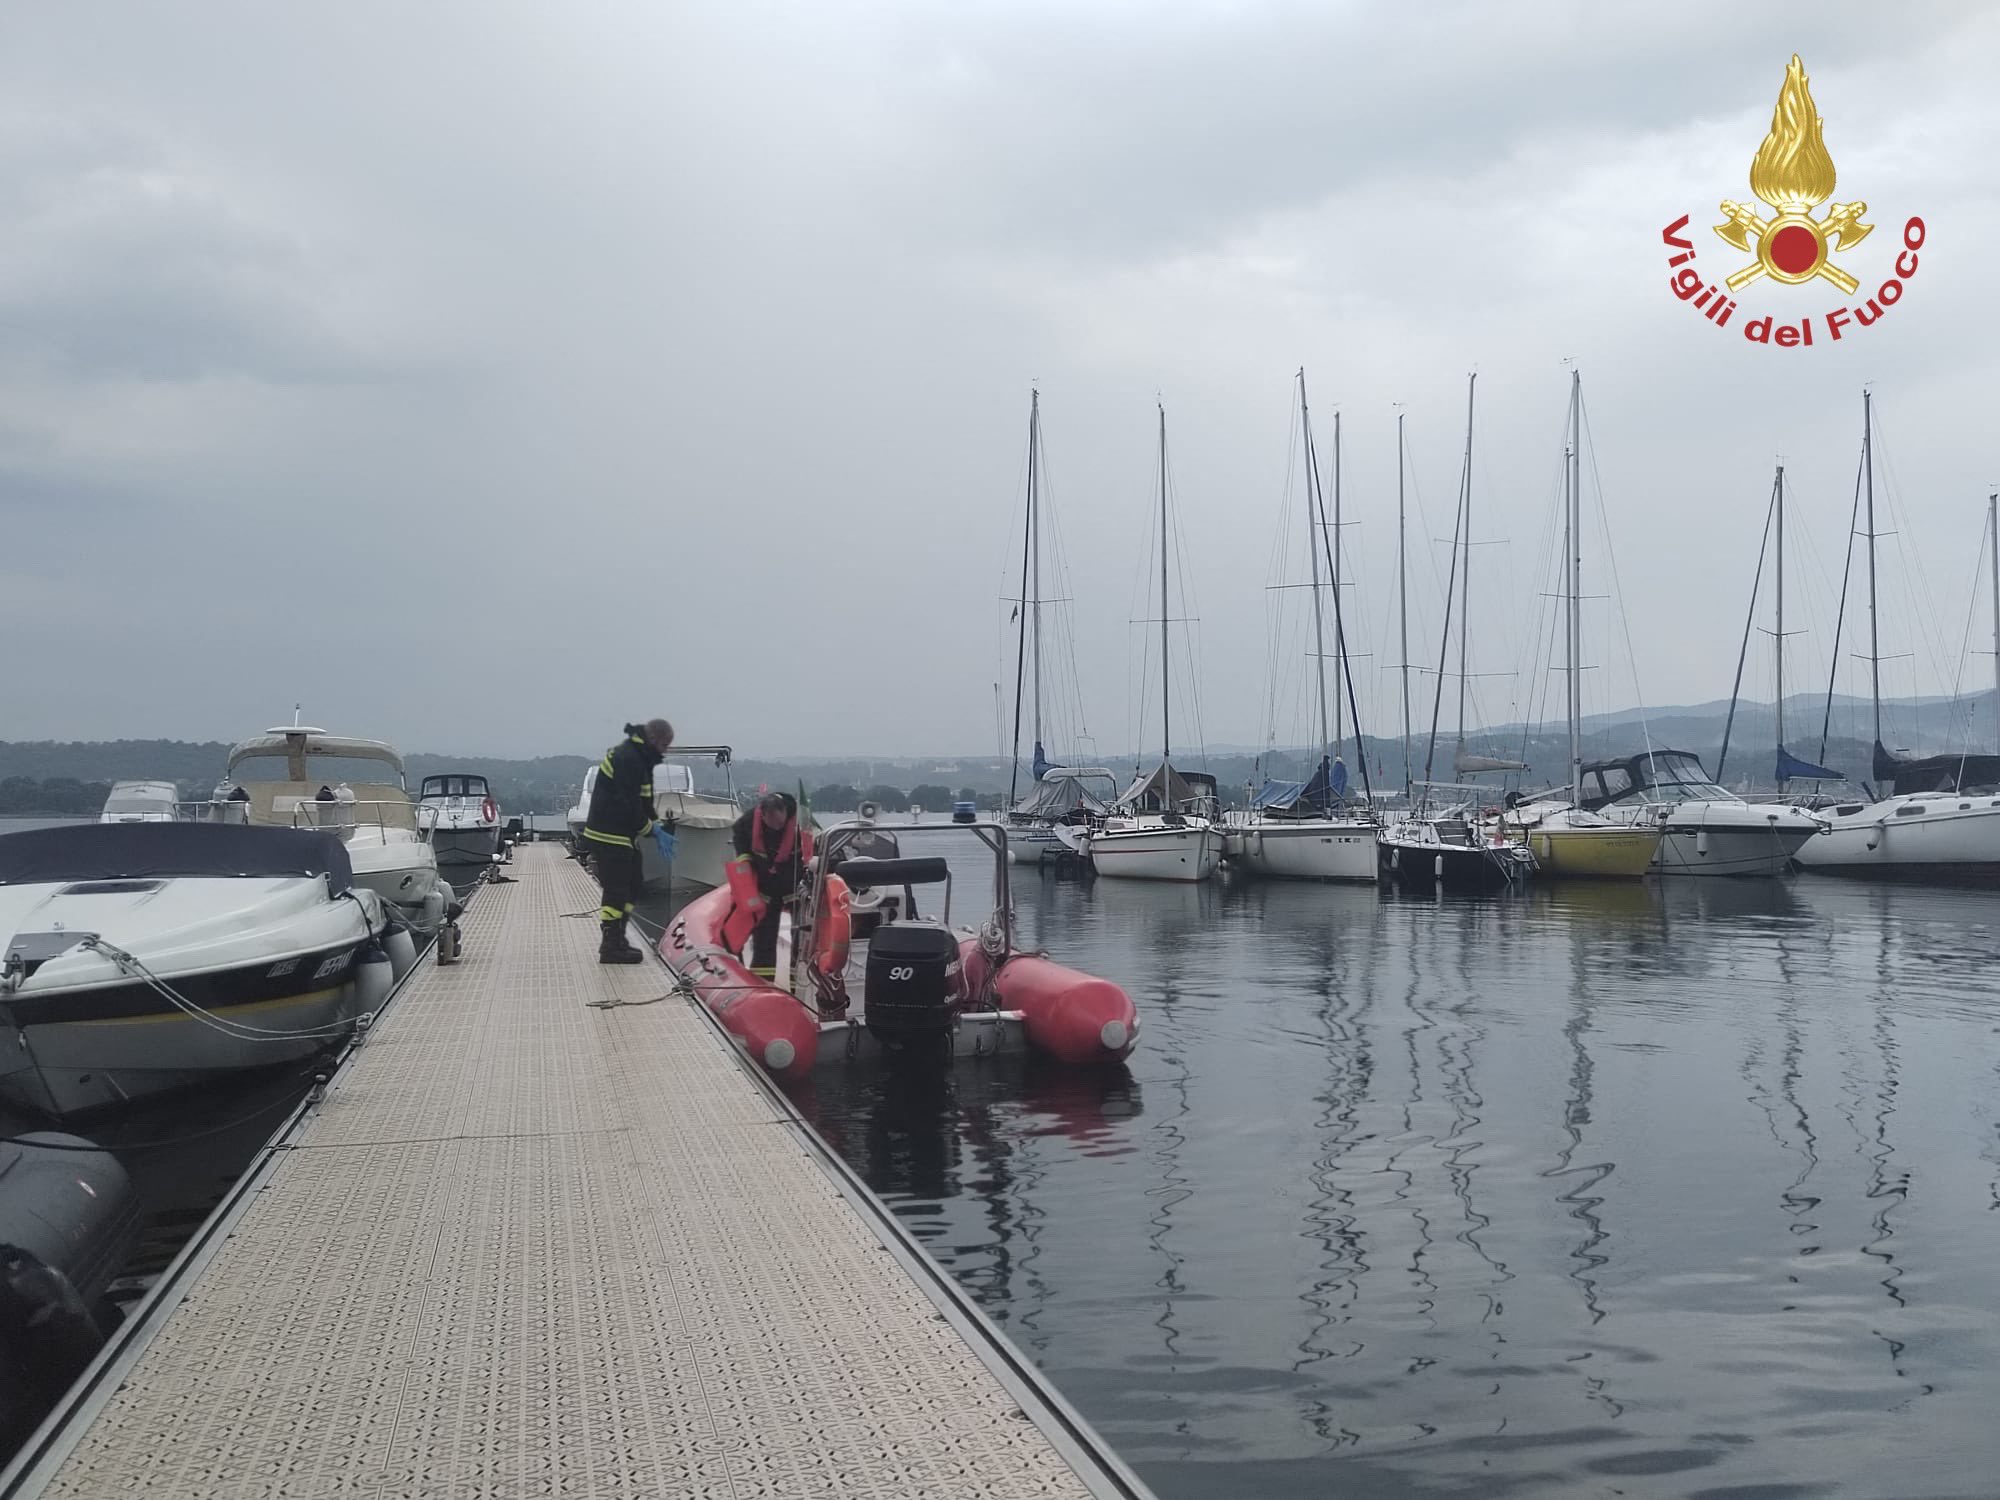 Ιταλία: Μυστήριο καλύπτει τον θάνατο των πρακτόρων στη λίμνη Ματζόρε – «Δεν είχε προβλεφθεί κακοκαιρία» λέει ο καπετάνιος